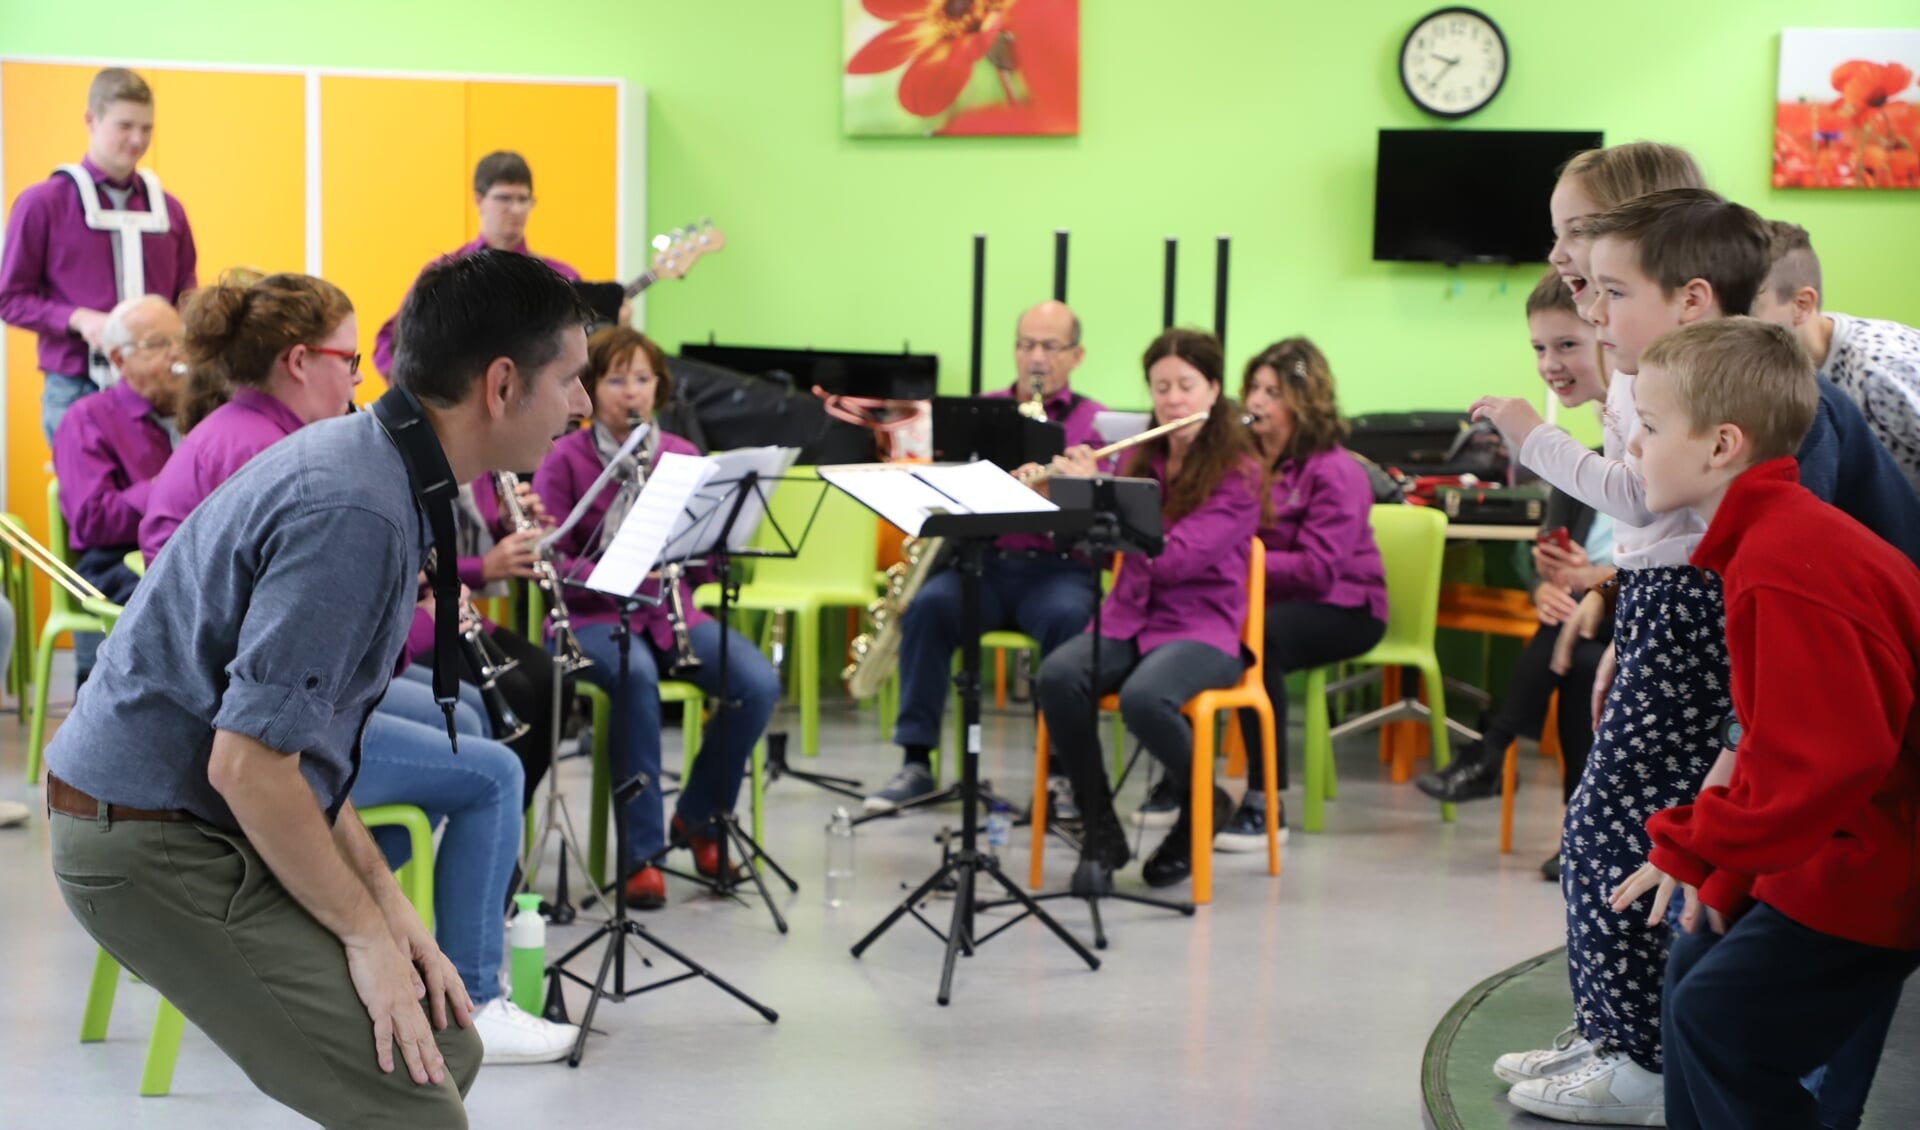 Muziek geeft plezier, ook tijdens een workshop op school.